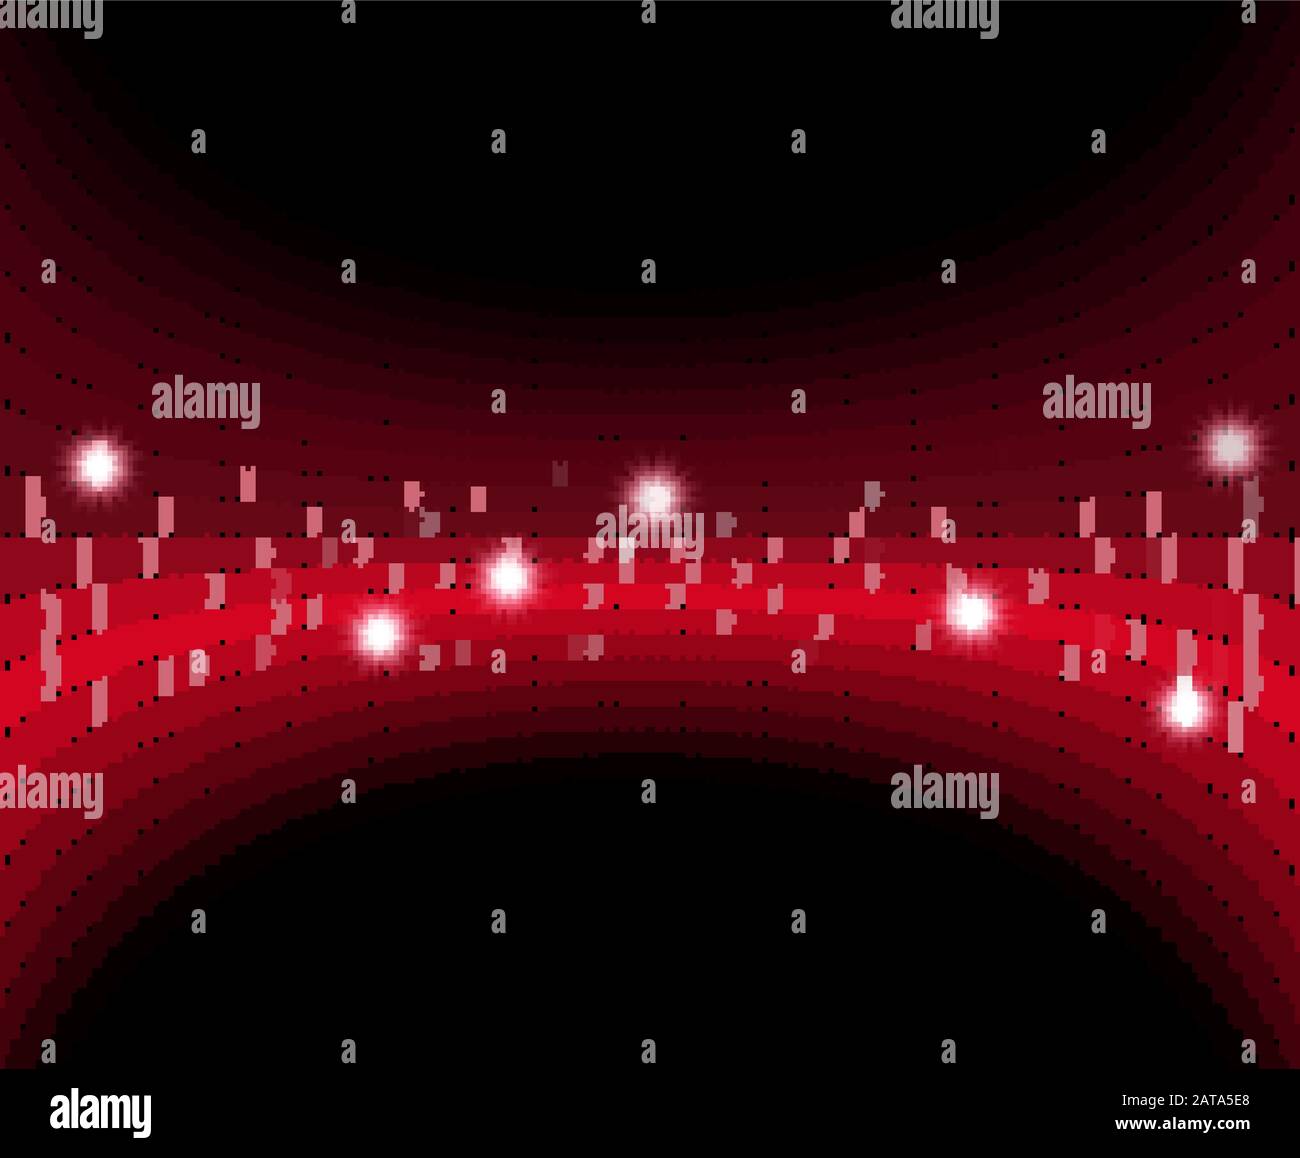 Rot glänzender Mosaikhintergrund mit Sparks - Vektor-Tesselliert leuchtendes Fischaugenobjektiv Verzerrungseffekt Stock Vektor